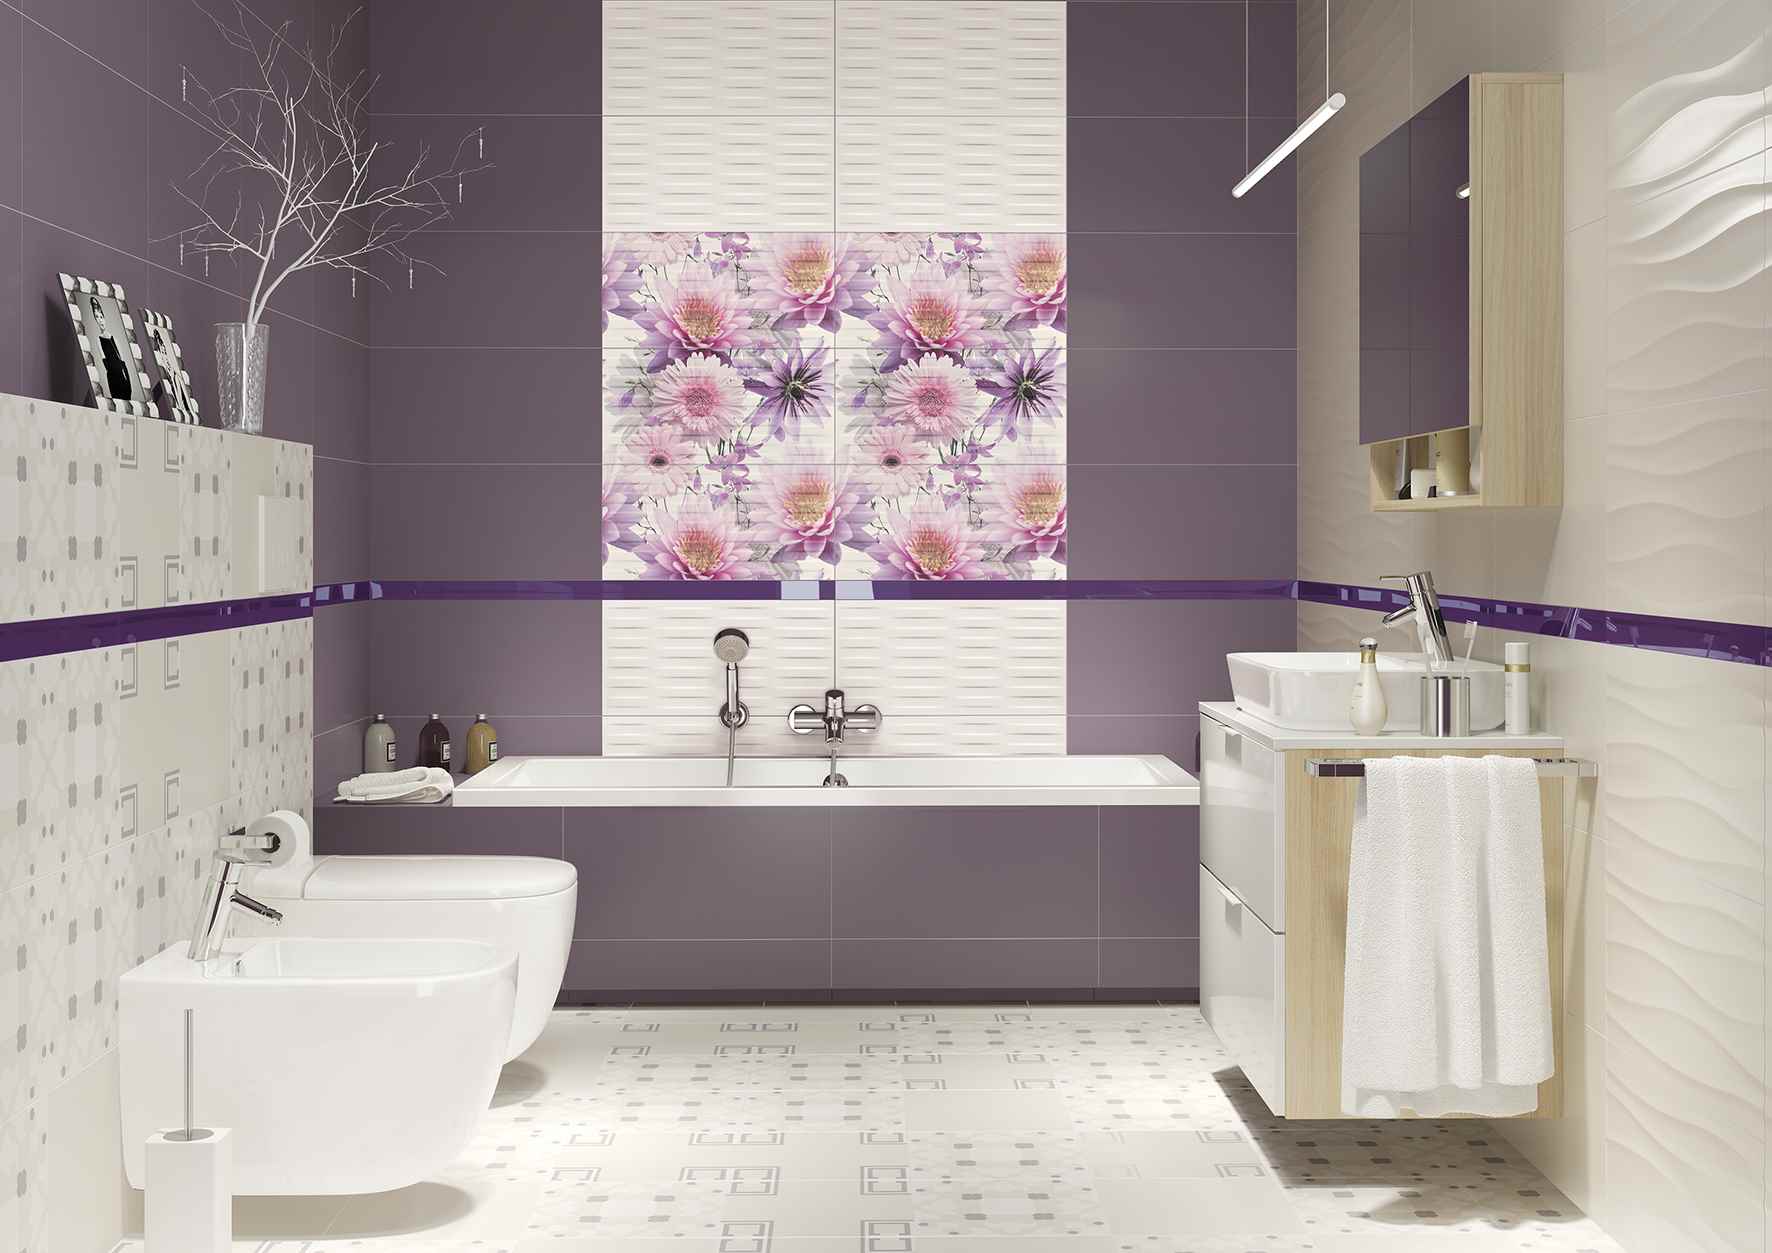 Lehetőség egy gyönyörű dekorációra a fürdőszobában csemperakáshoz